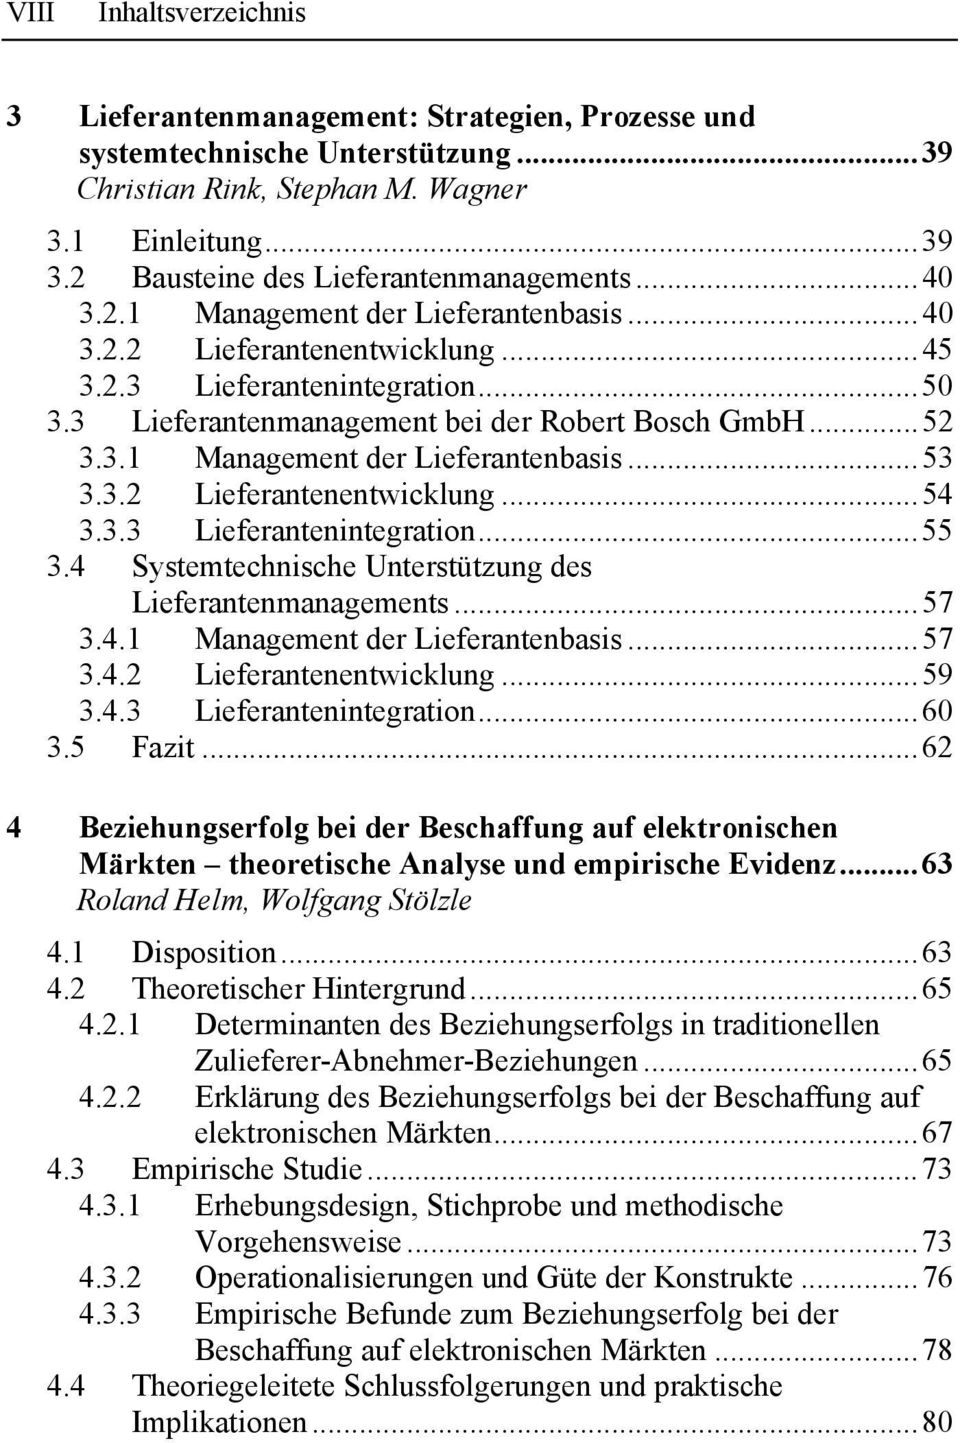 3 Lieferantenmanagement bei der Robert Bosch GmbH...52 3.3.1 Management der Lieferantenbasis...53 3.3.2 Lieferantenentwicklung...54 3.3.3 Lieferantenintegration...55 3.